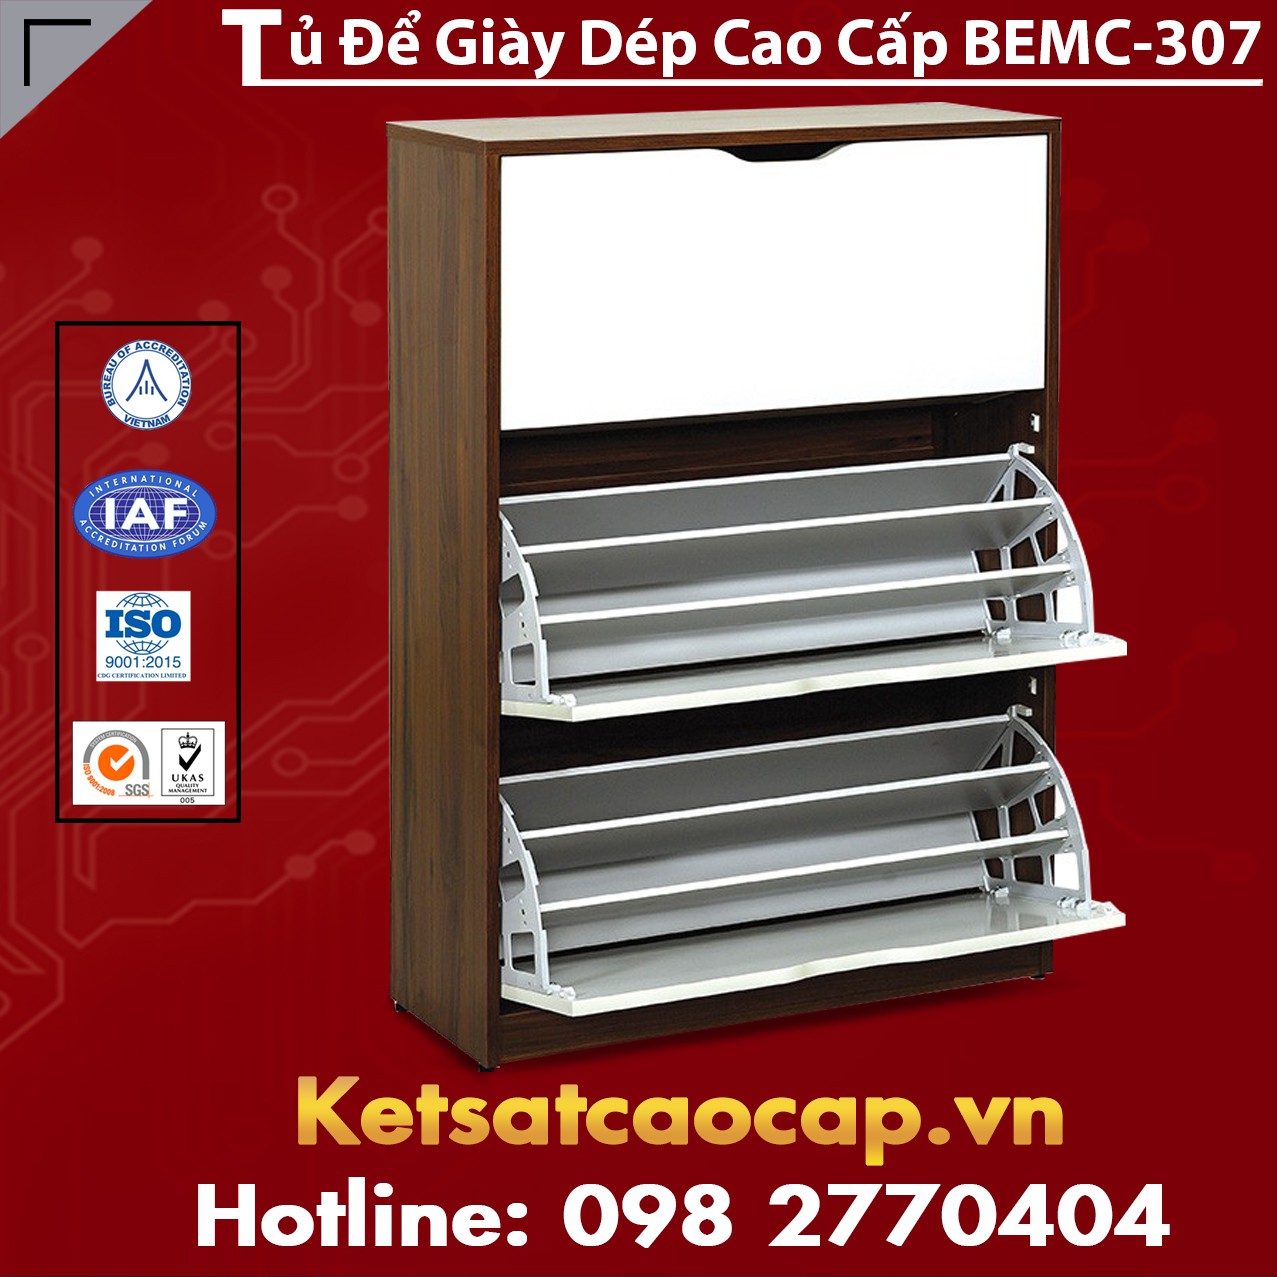 Tủ giày BEMC-307 thiết kế tiện gọn, đơn giản